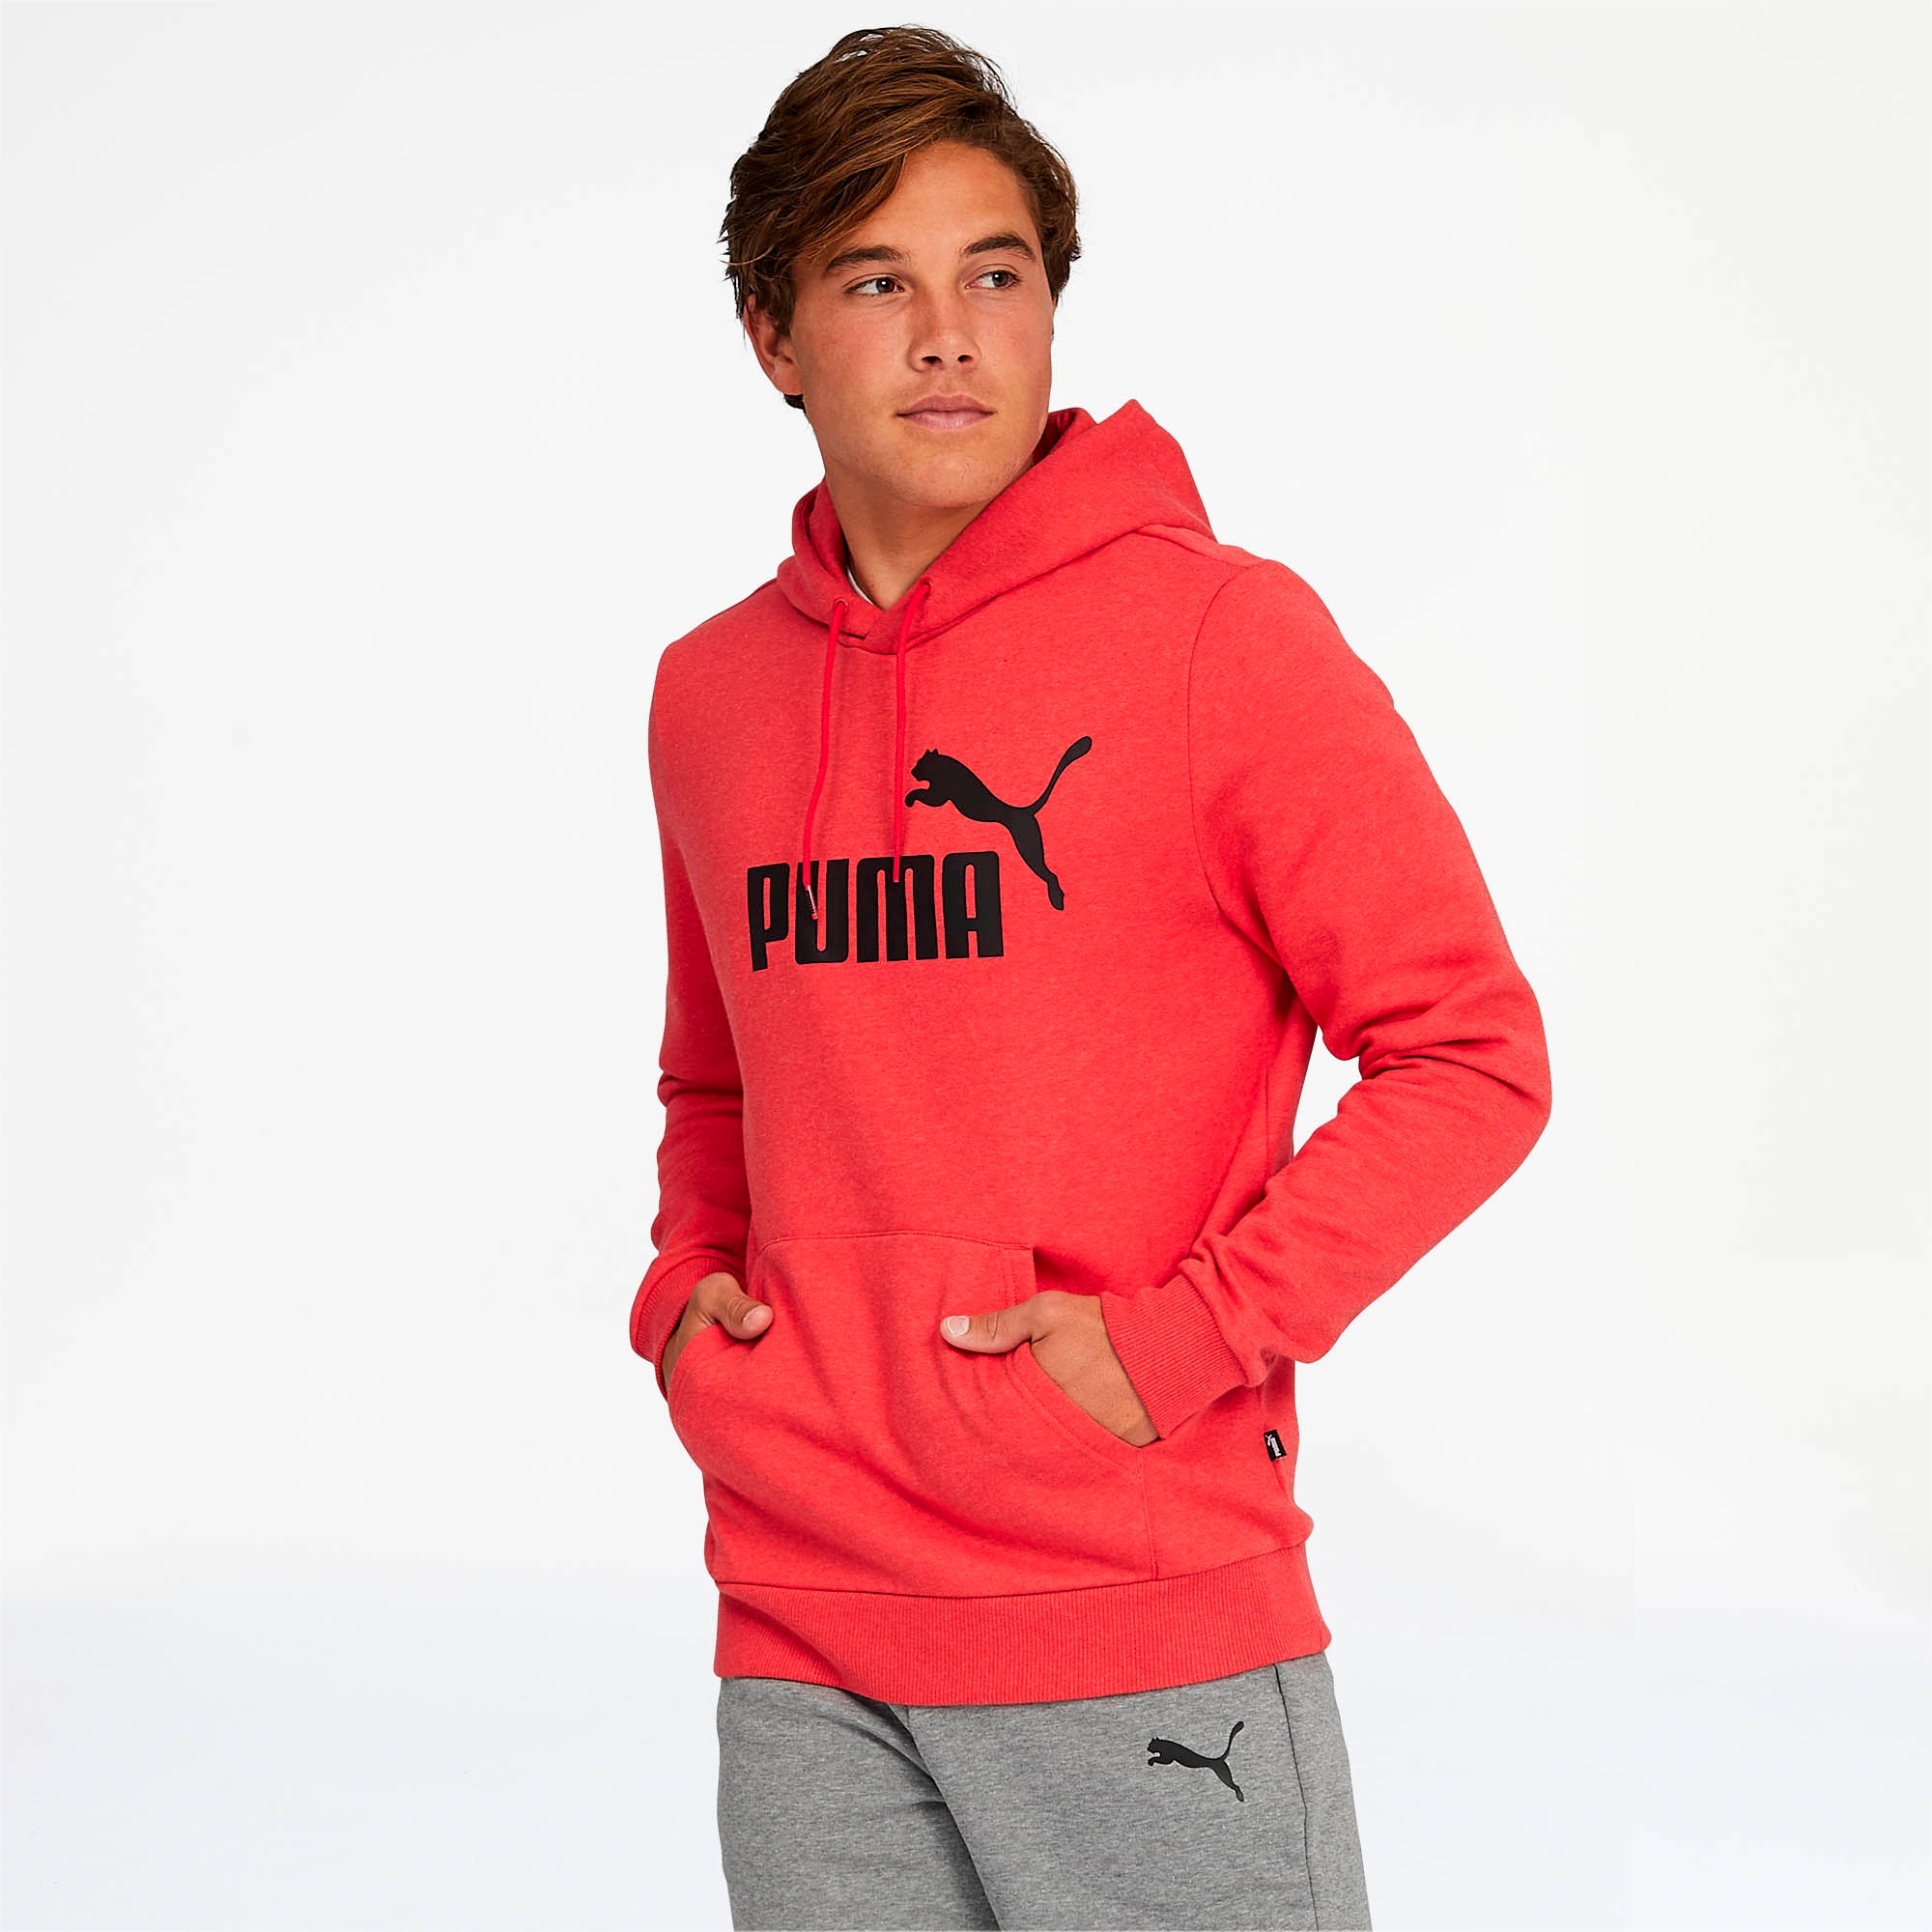 puma fleece hoodie men's